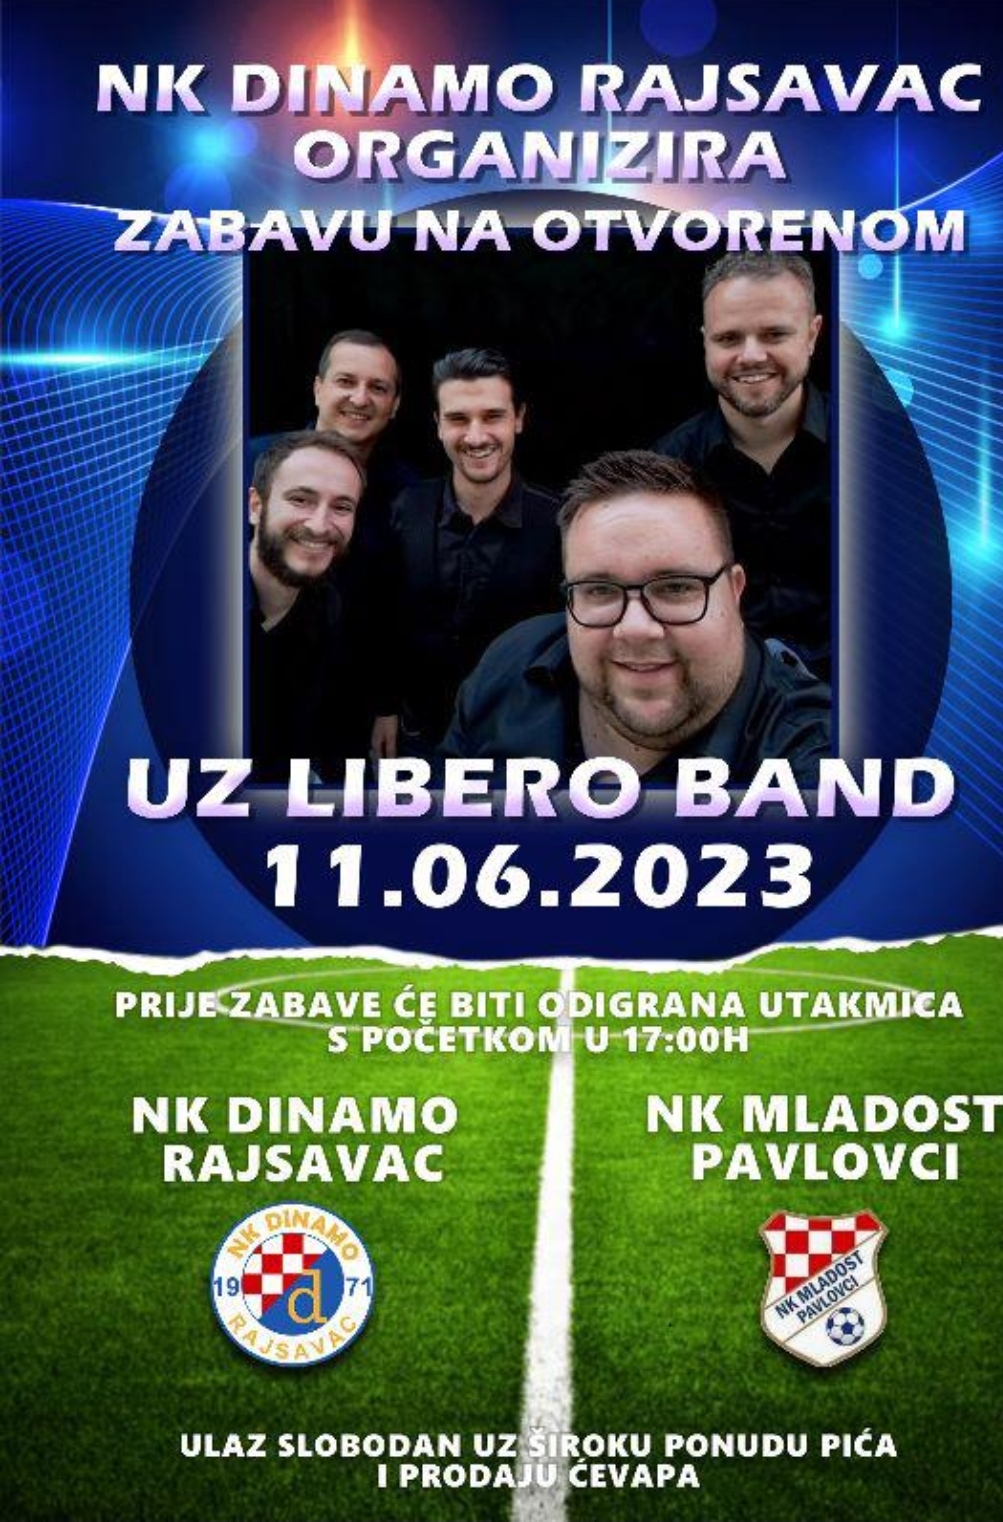 Požega.eu | Nakon utakmice u Rajsavcu uz Libero band zabava na otvorenom: Nedjelja, 11.lipnja 2023.